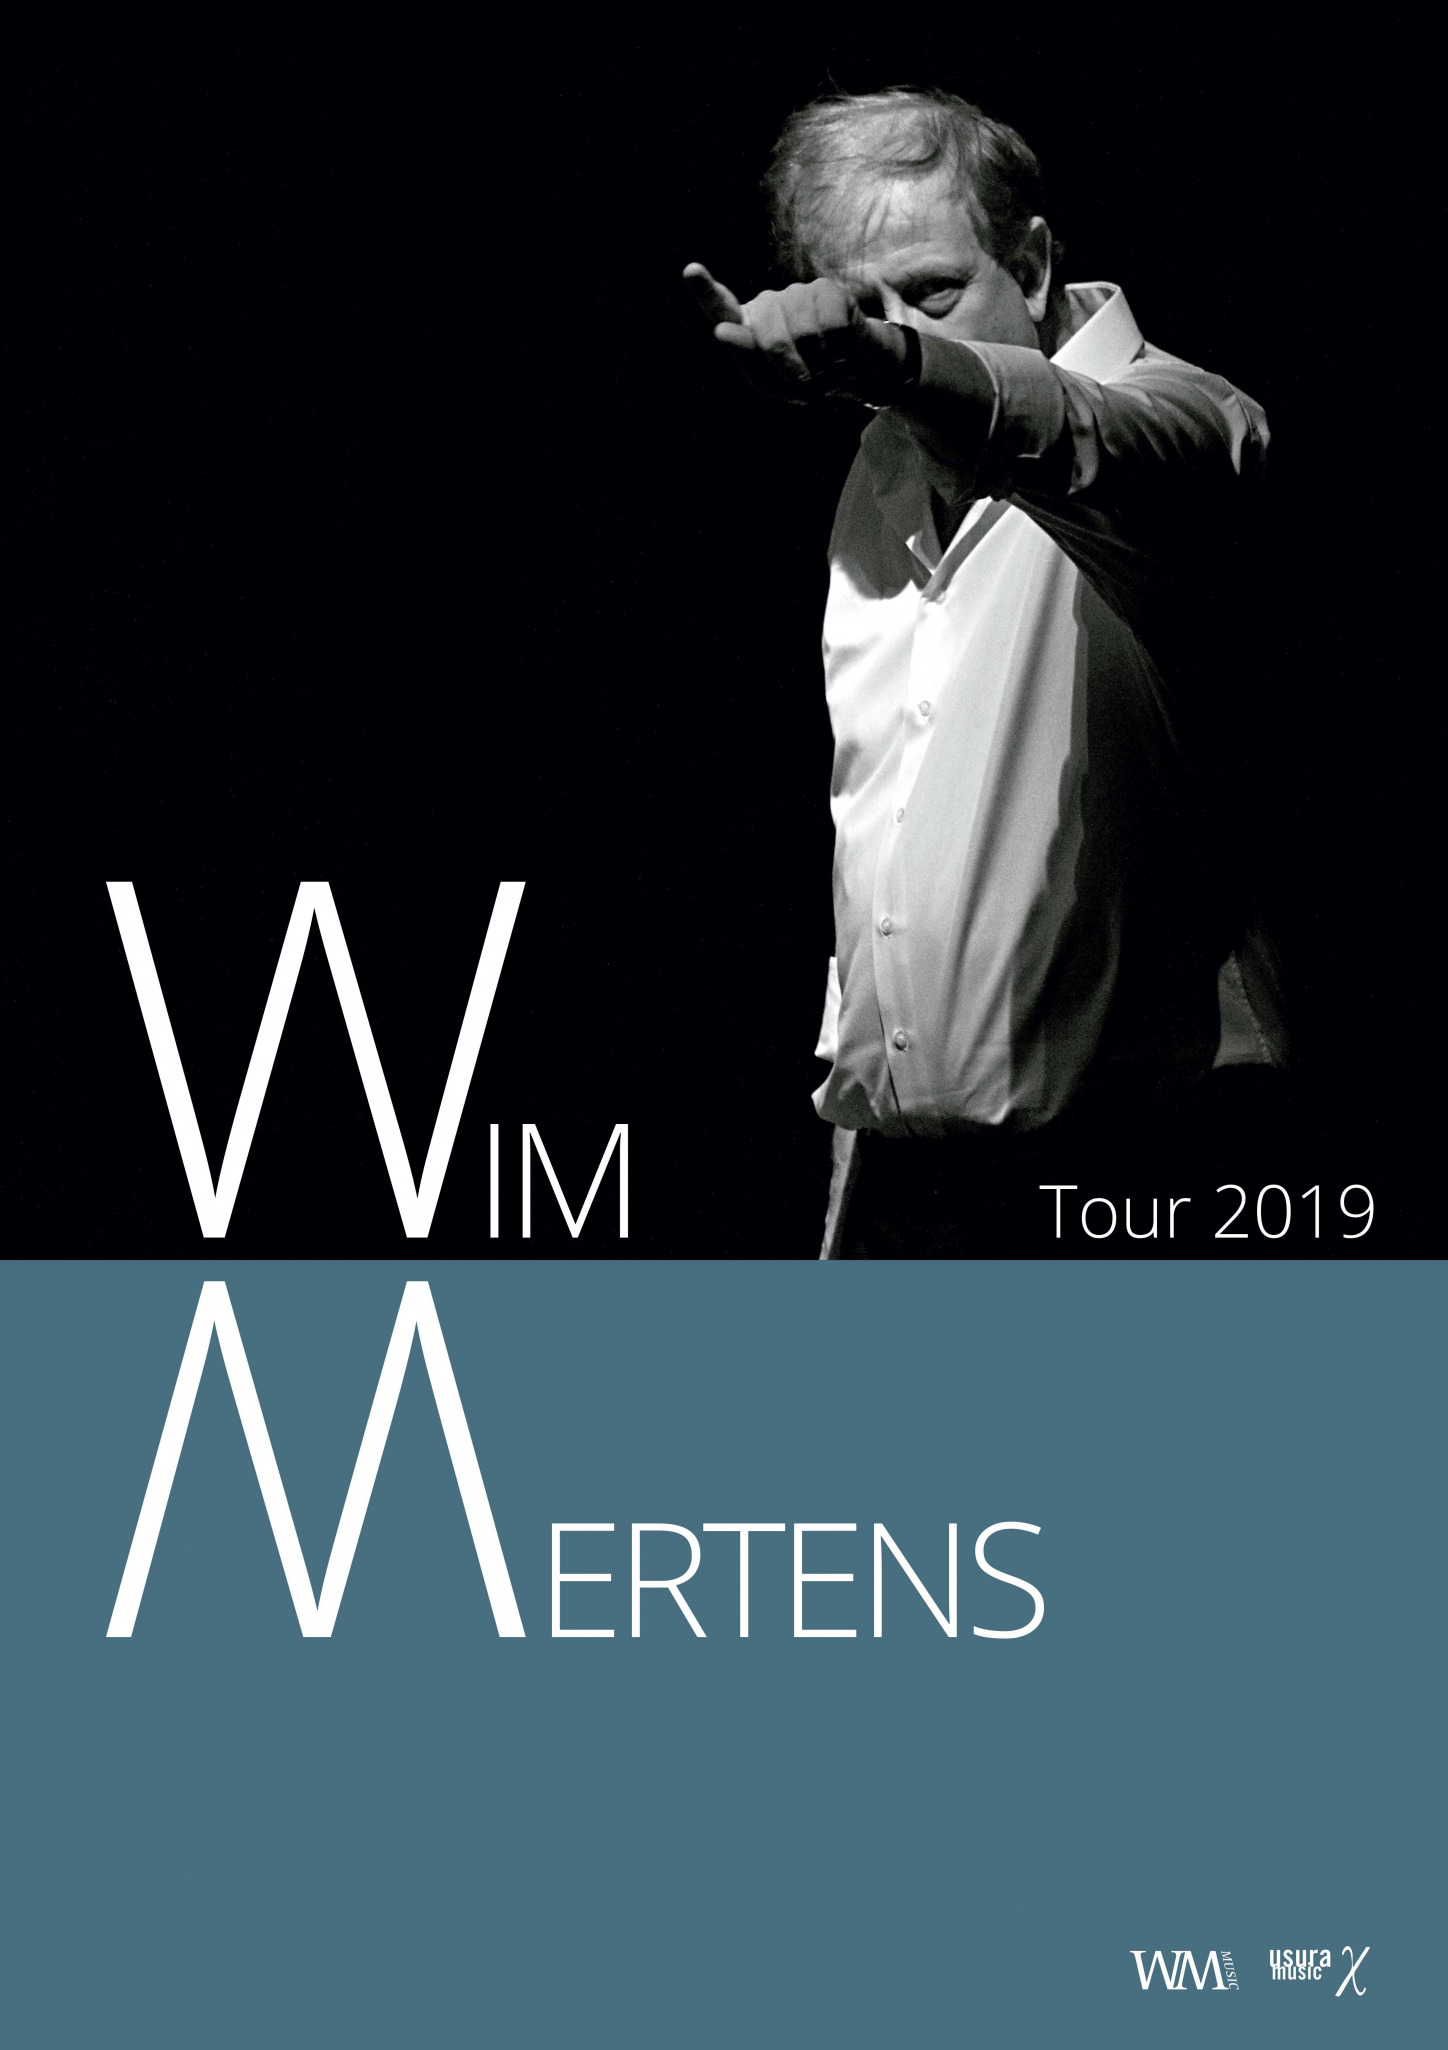 Wim Mertens en concierto en el Teatro Romea de Murcia